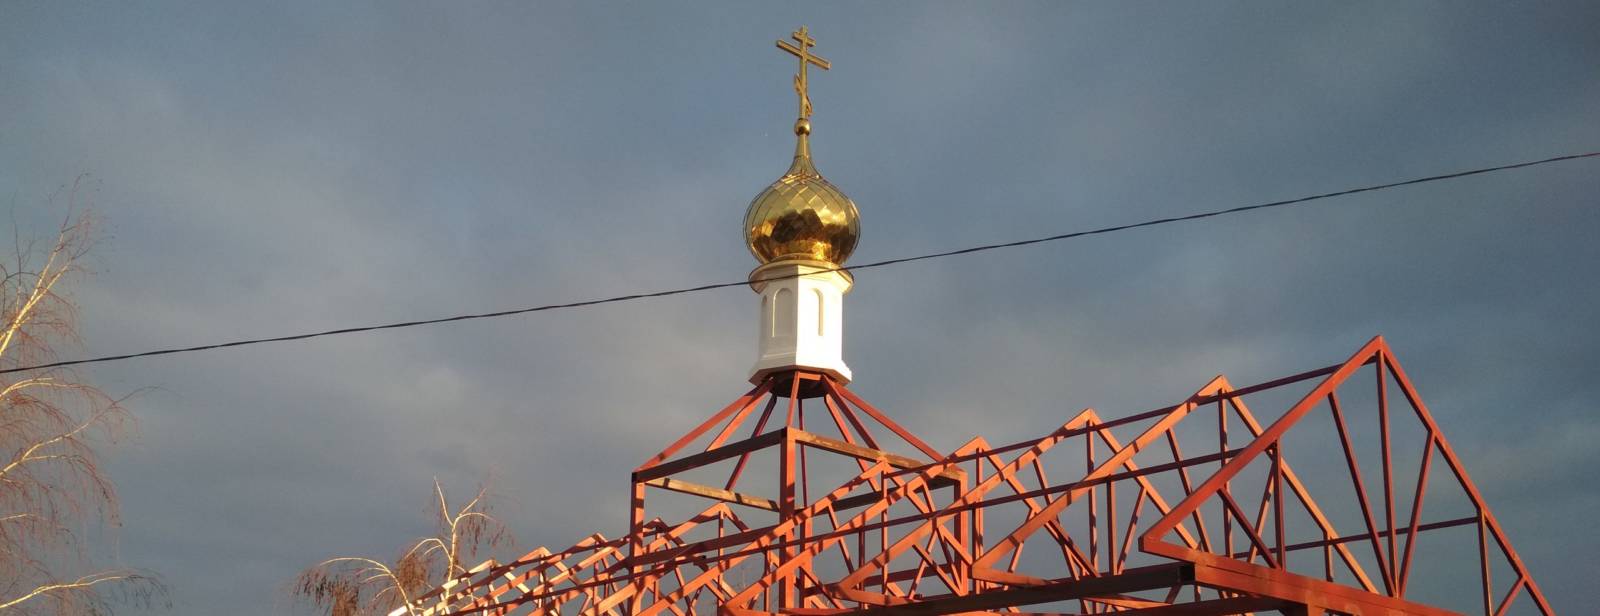 На строящемся храме Святителя Николая установлен купол.